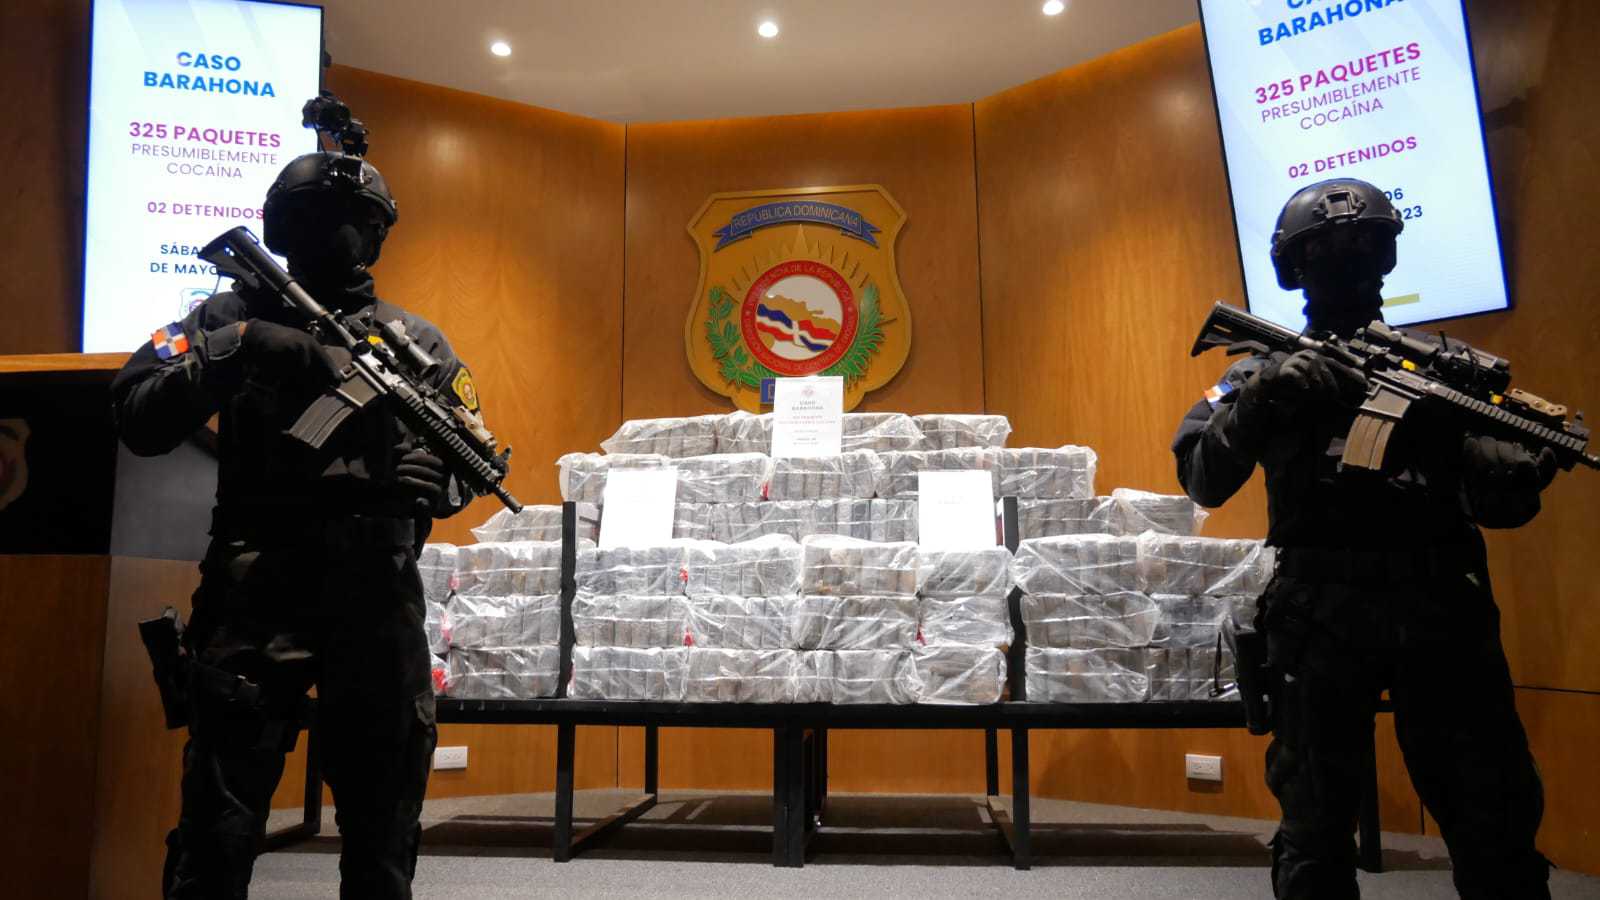 Descubren gran cantidad de droga en Barahona: 325 paquetes